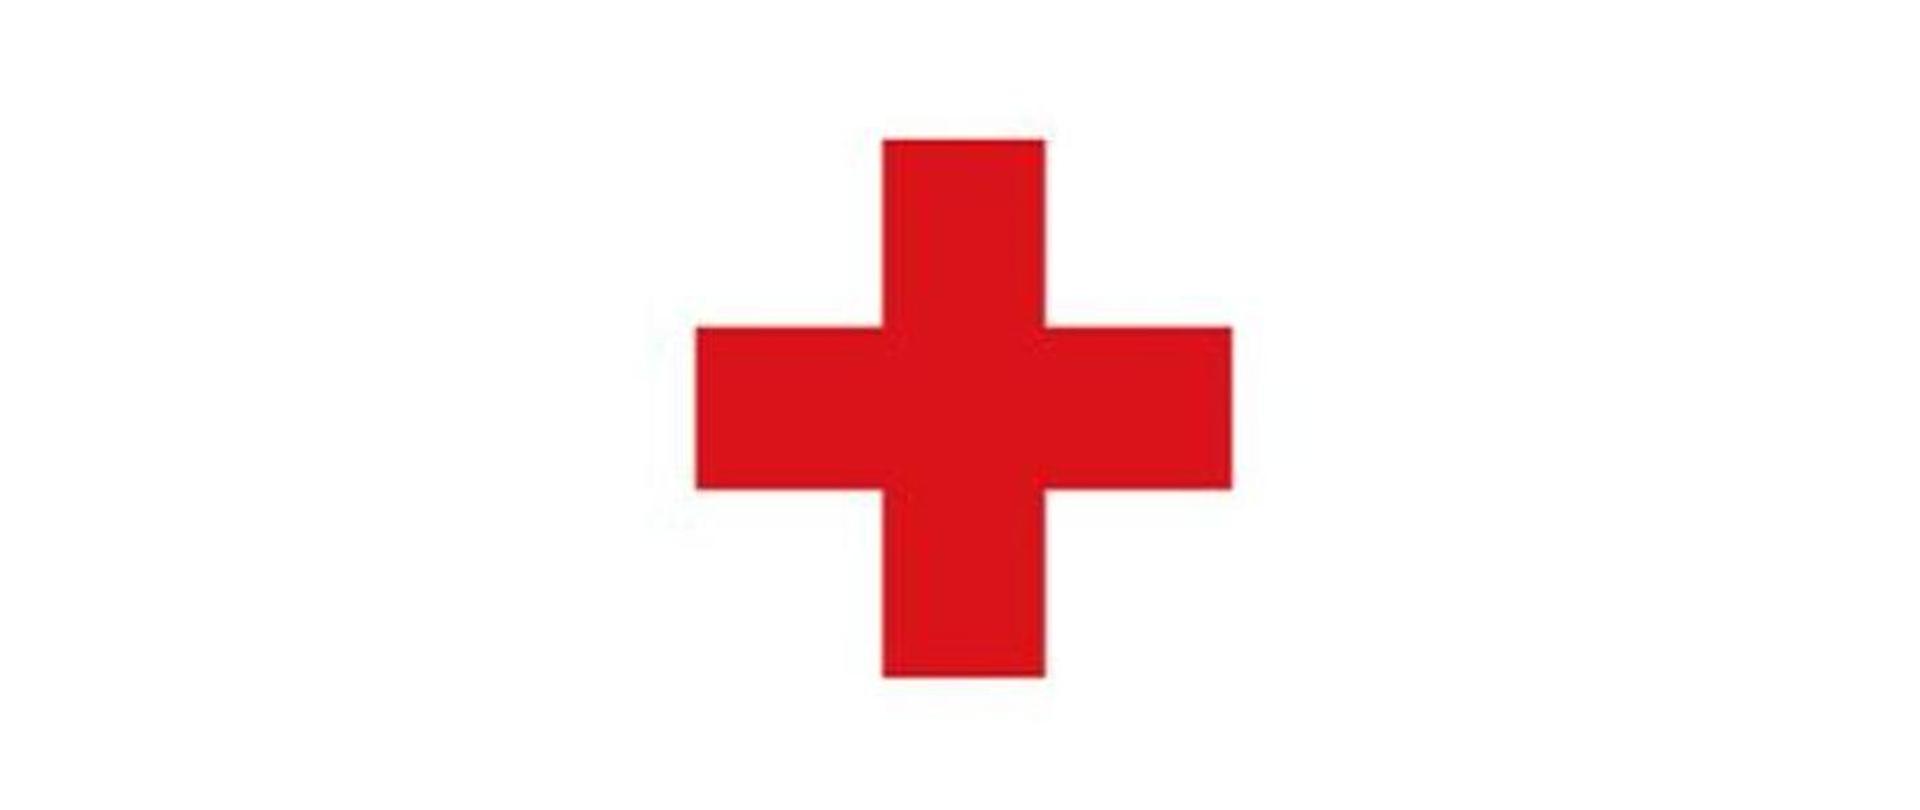 Ilustracja przedstawia czerwony symetryczny krzyż na białym tle.